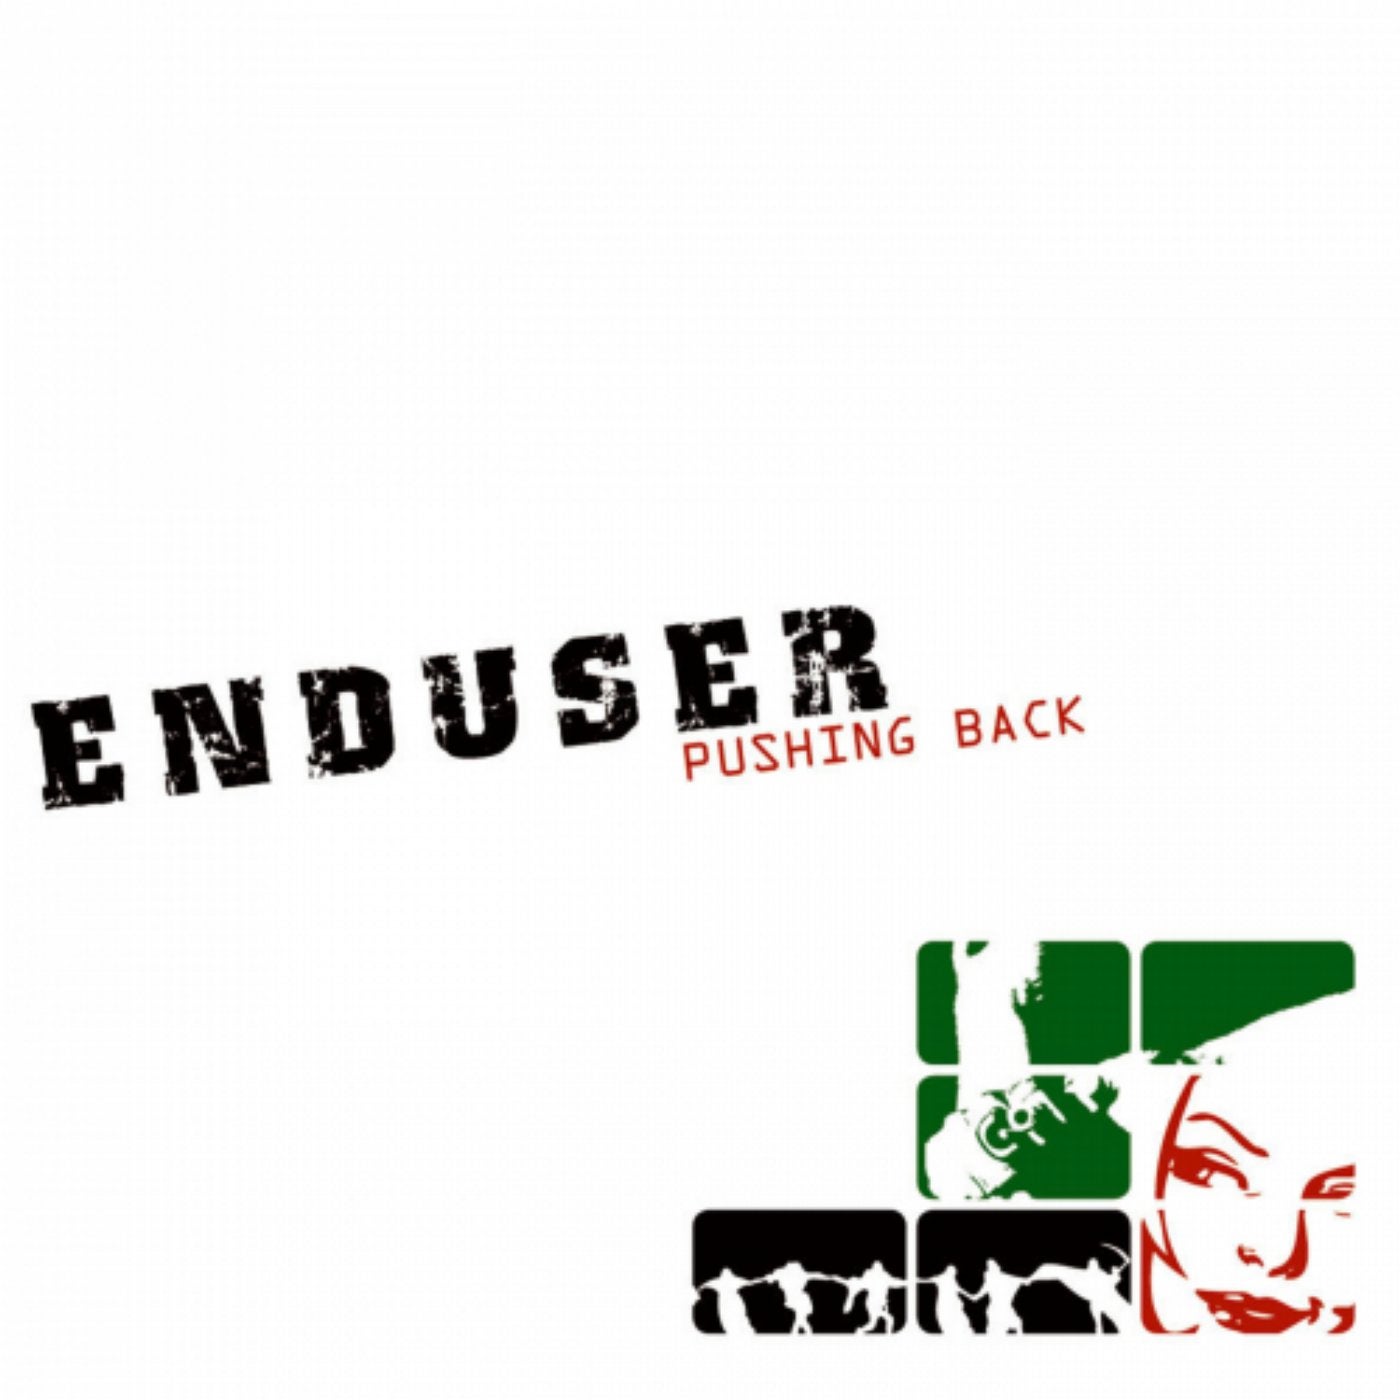 Pushing me back. Enduser 1/3. Enduser. Enduser – the end.